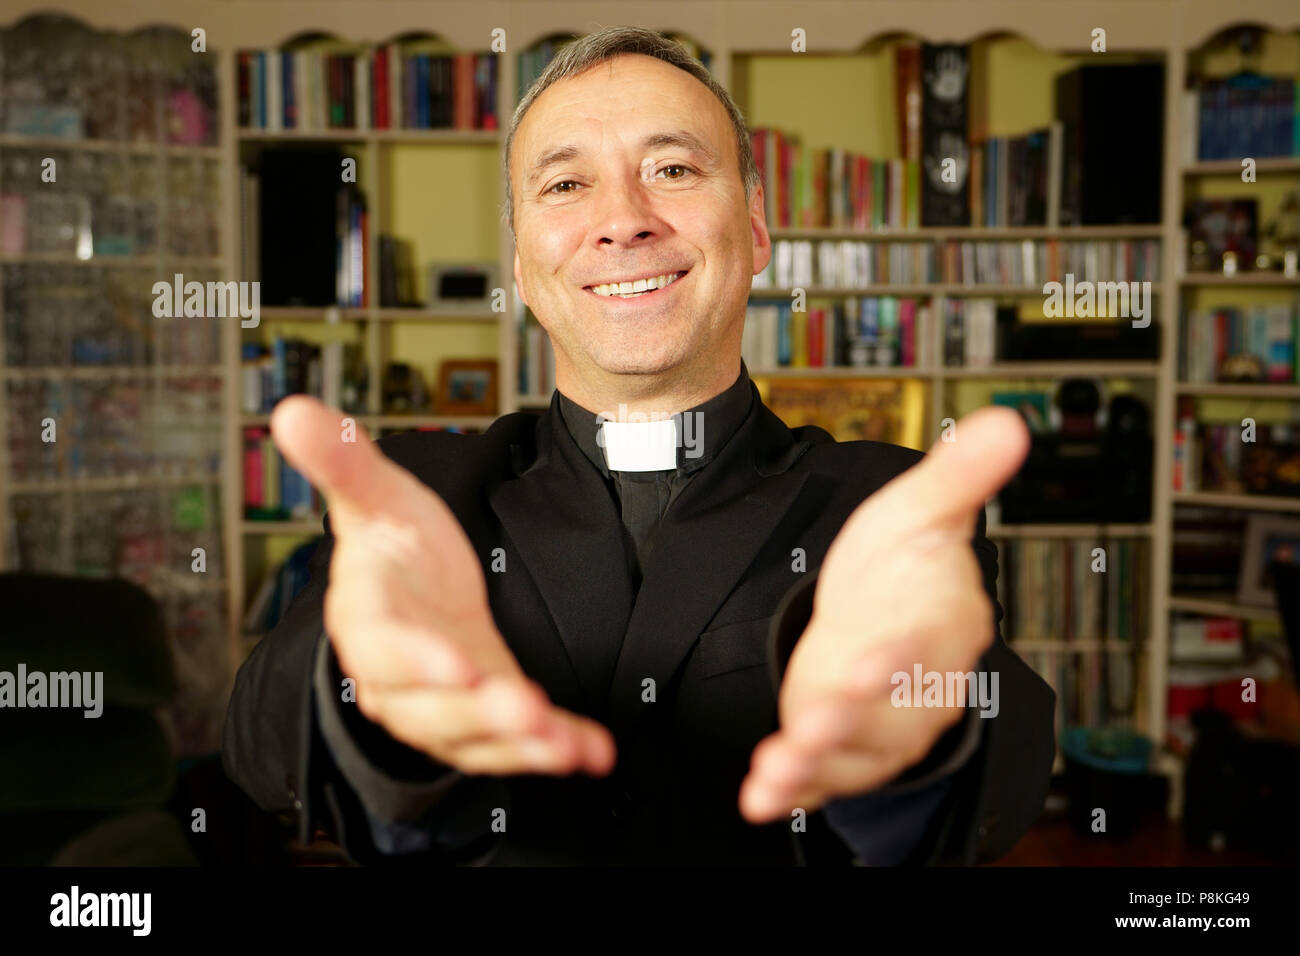 Ein katholischer Priester ist seine Hände öffnen die Freude Christi zu bieten. Er schaut uns mit Freude, Frieden und Optimismus. Fokus auf das Gesicht. Stockfoto